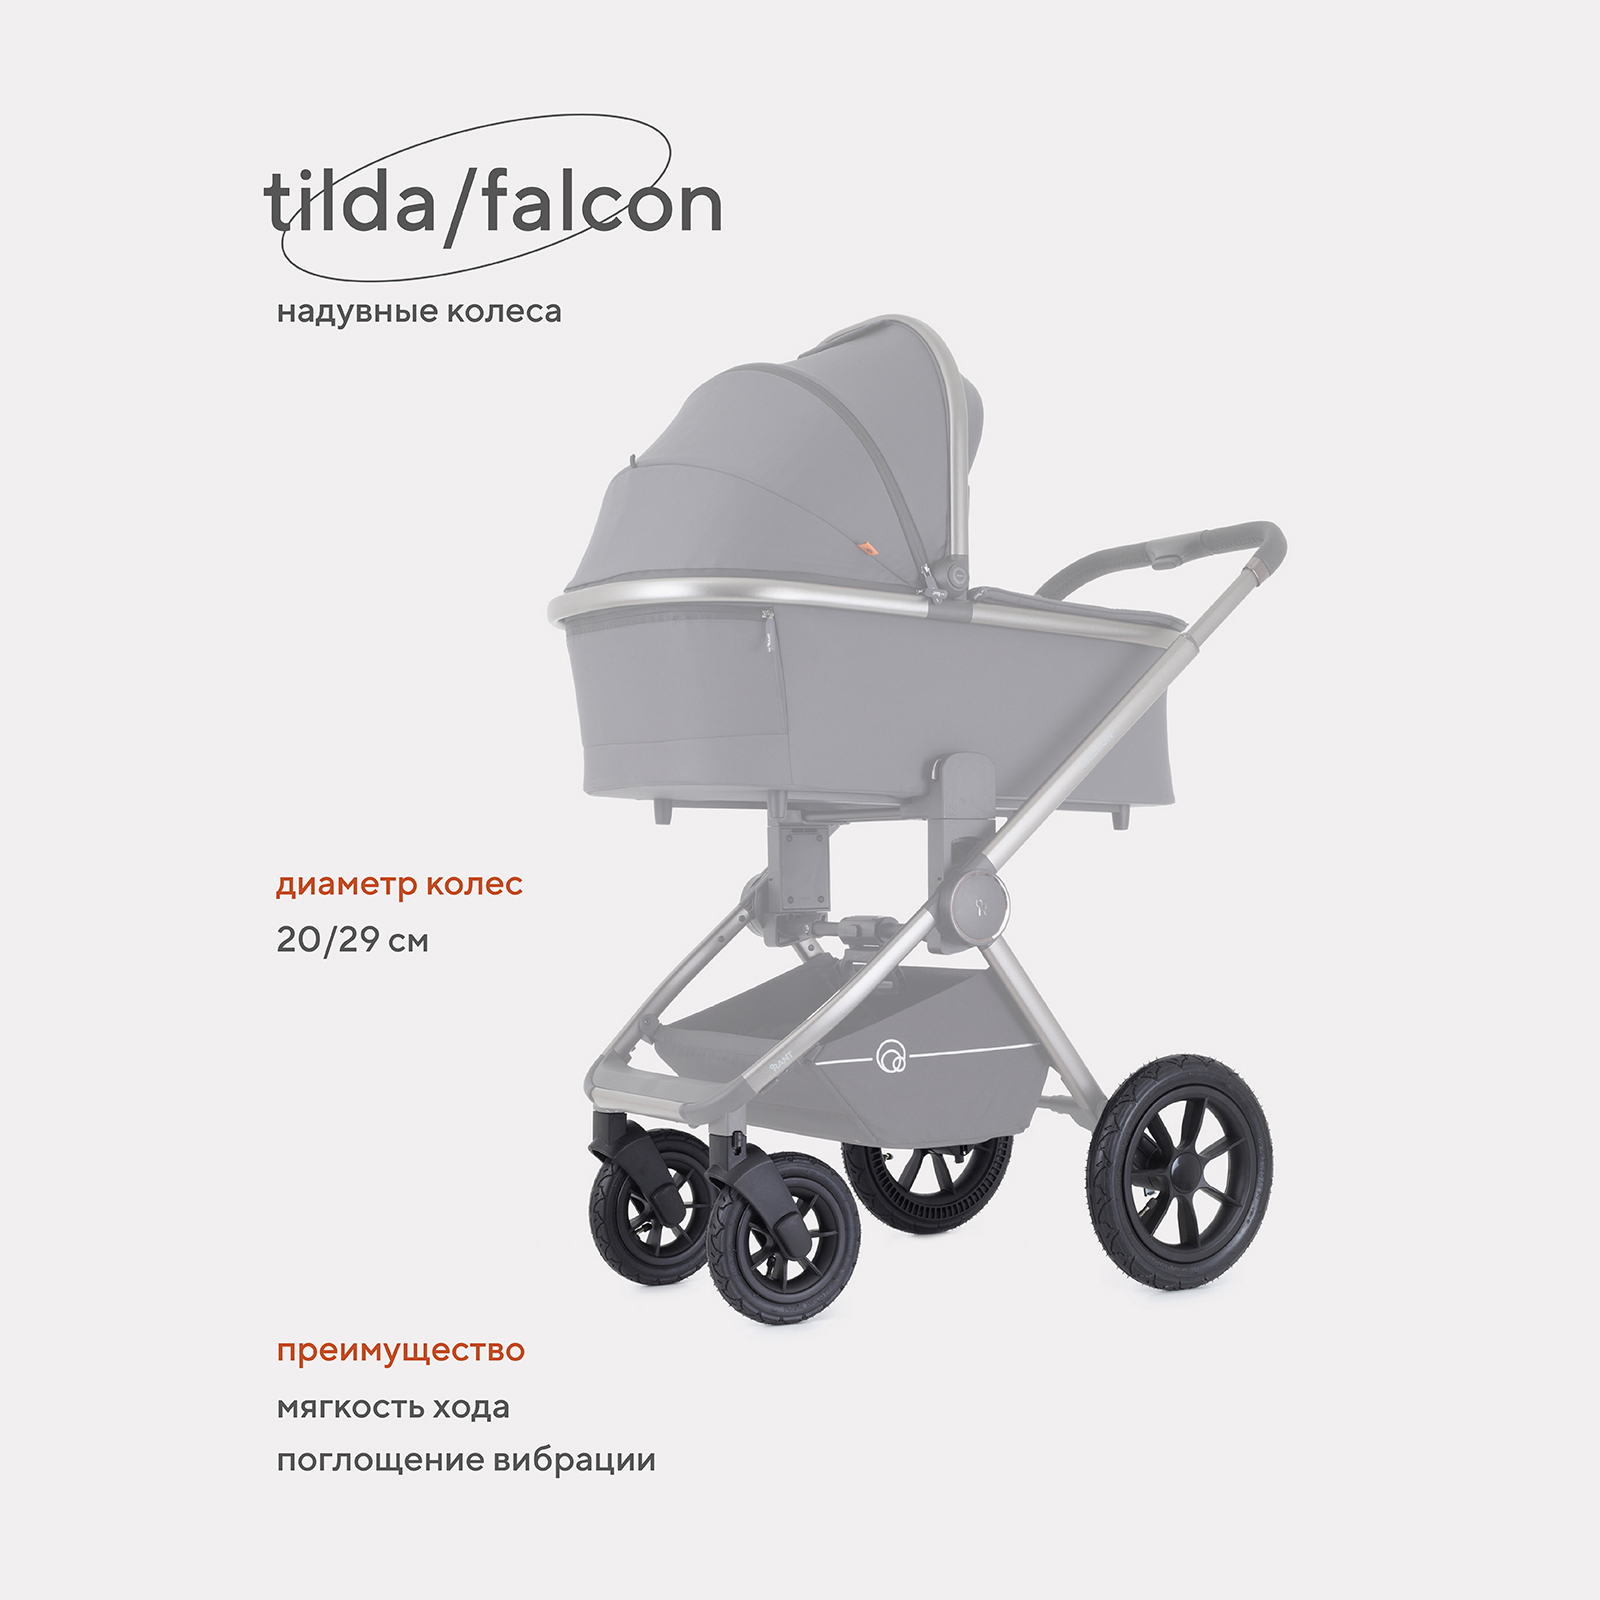 Комплект надувных колес Rant Falcon/Tilda RW002 комплект надувных колес rant falcon tilda rw002